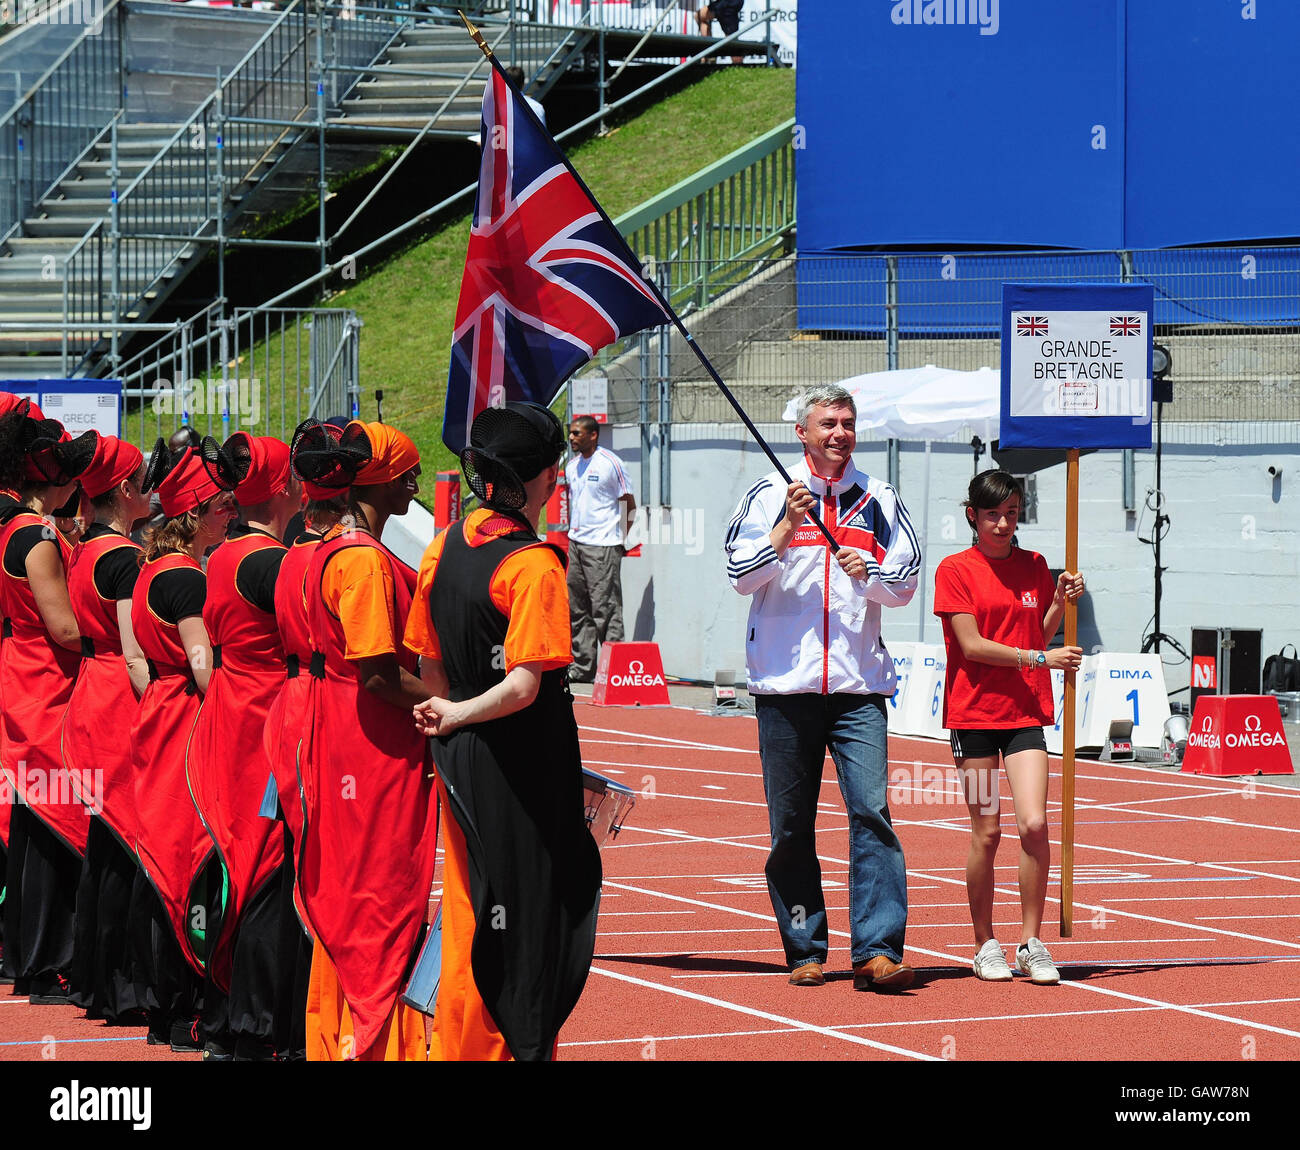 Jonathan Edwards, ancien champion du saut du monde et de la Triplle olympique, porte le drapeau de la Grande-Bretagne lors de la cérémonie d'ouverture de la coupe d'Europe Spar à Annecy, en France. Banque D'Images